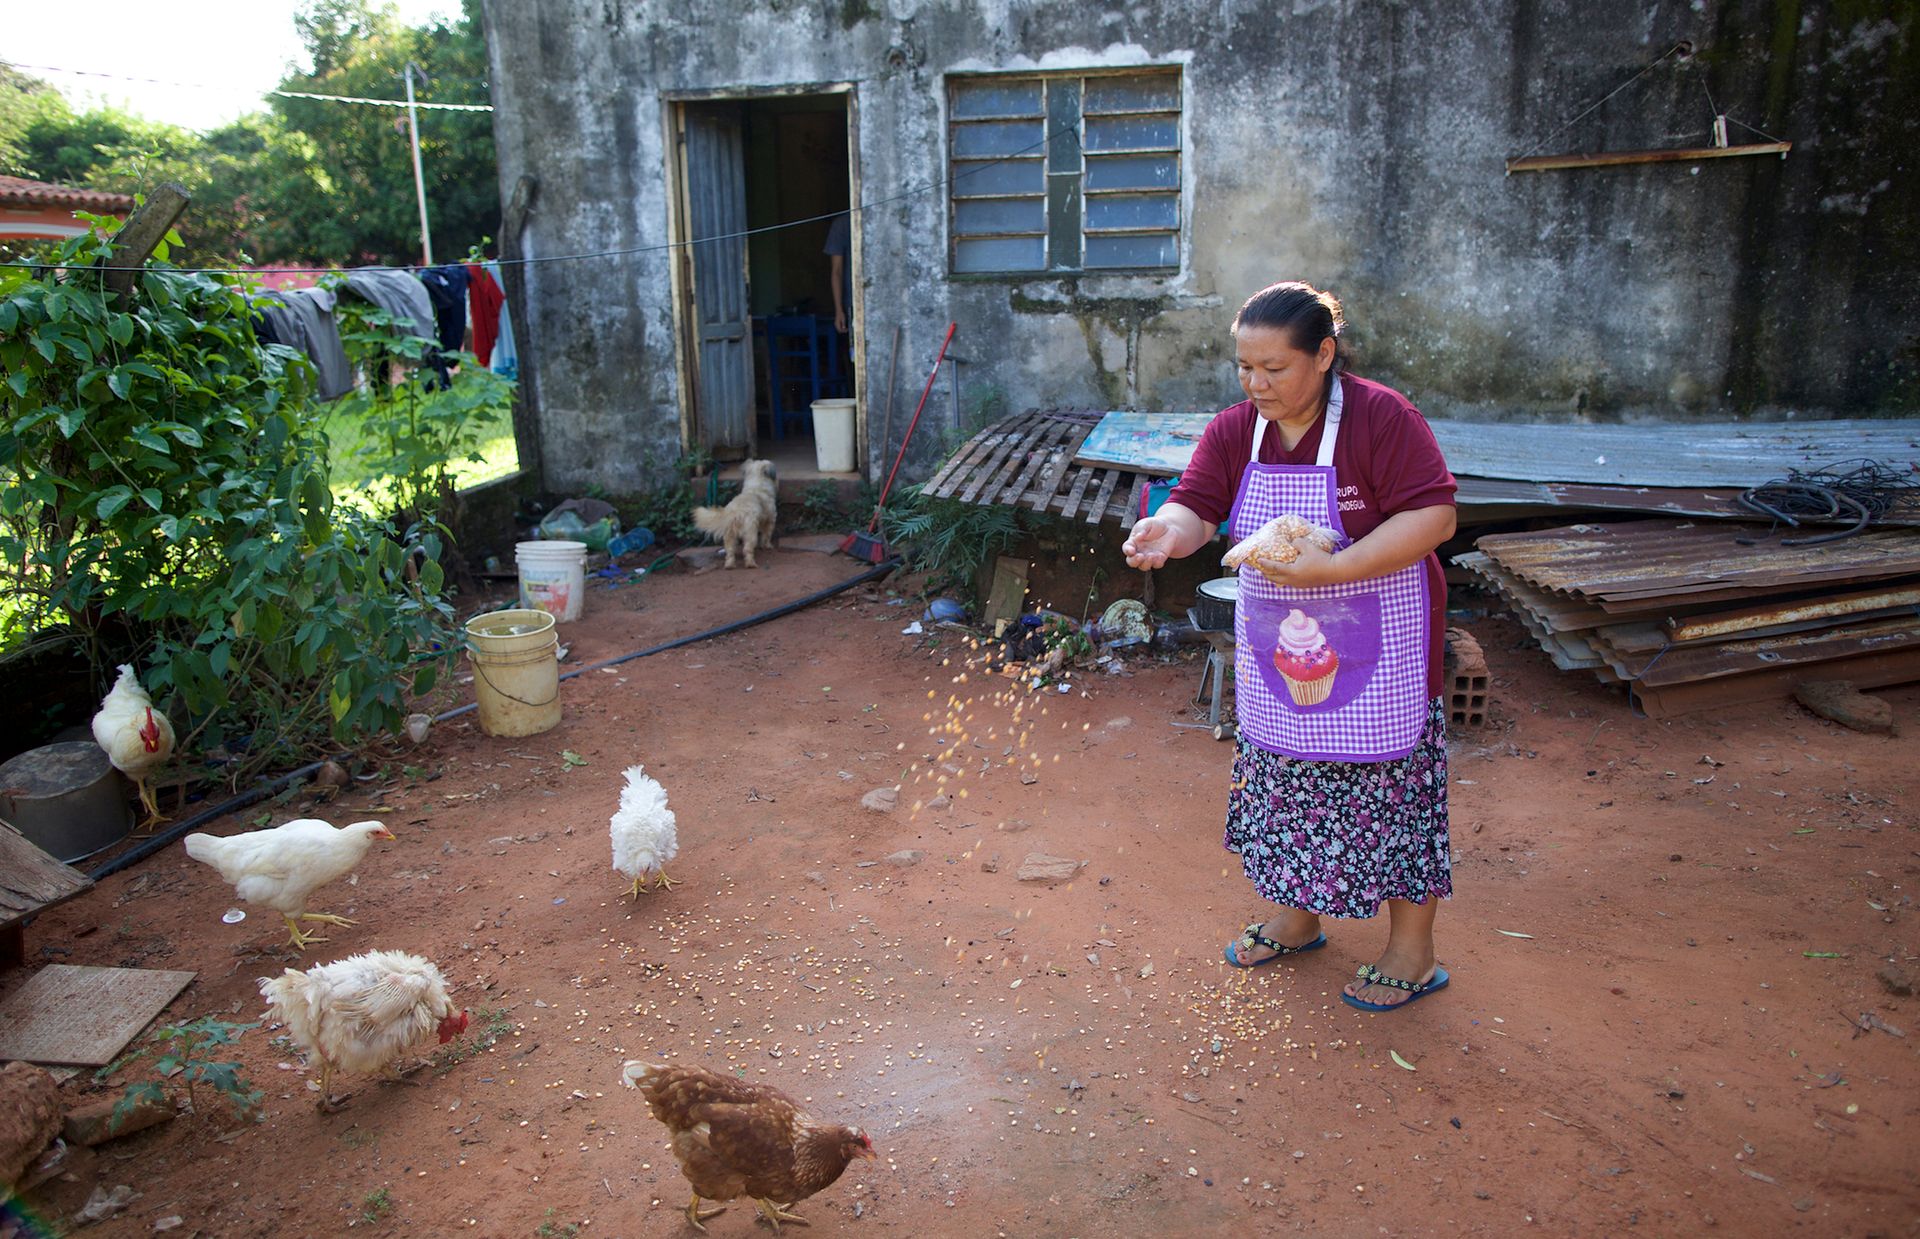 Die Hühner gehören ebenfalls zu Adrianas kleinem Unternehmen. Die Eier braucht sie als wichtige Backzutat für das Brot.